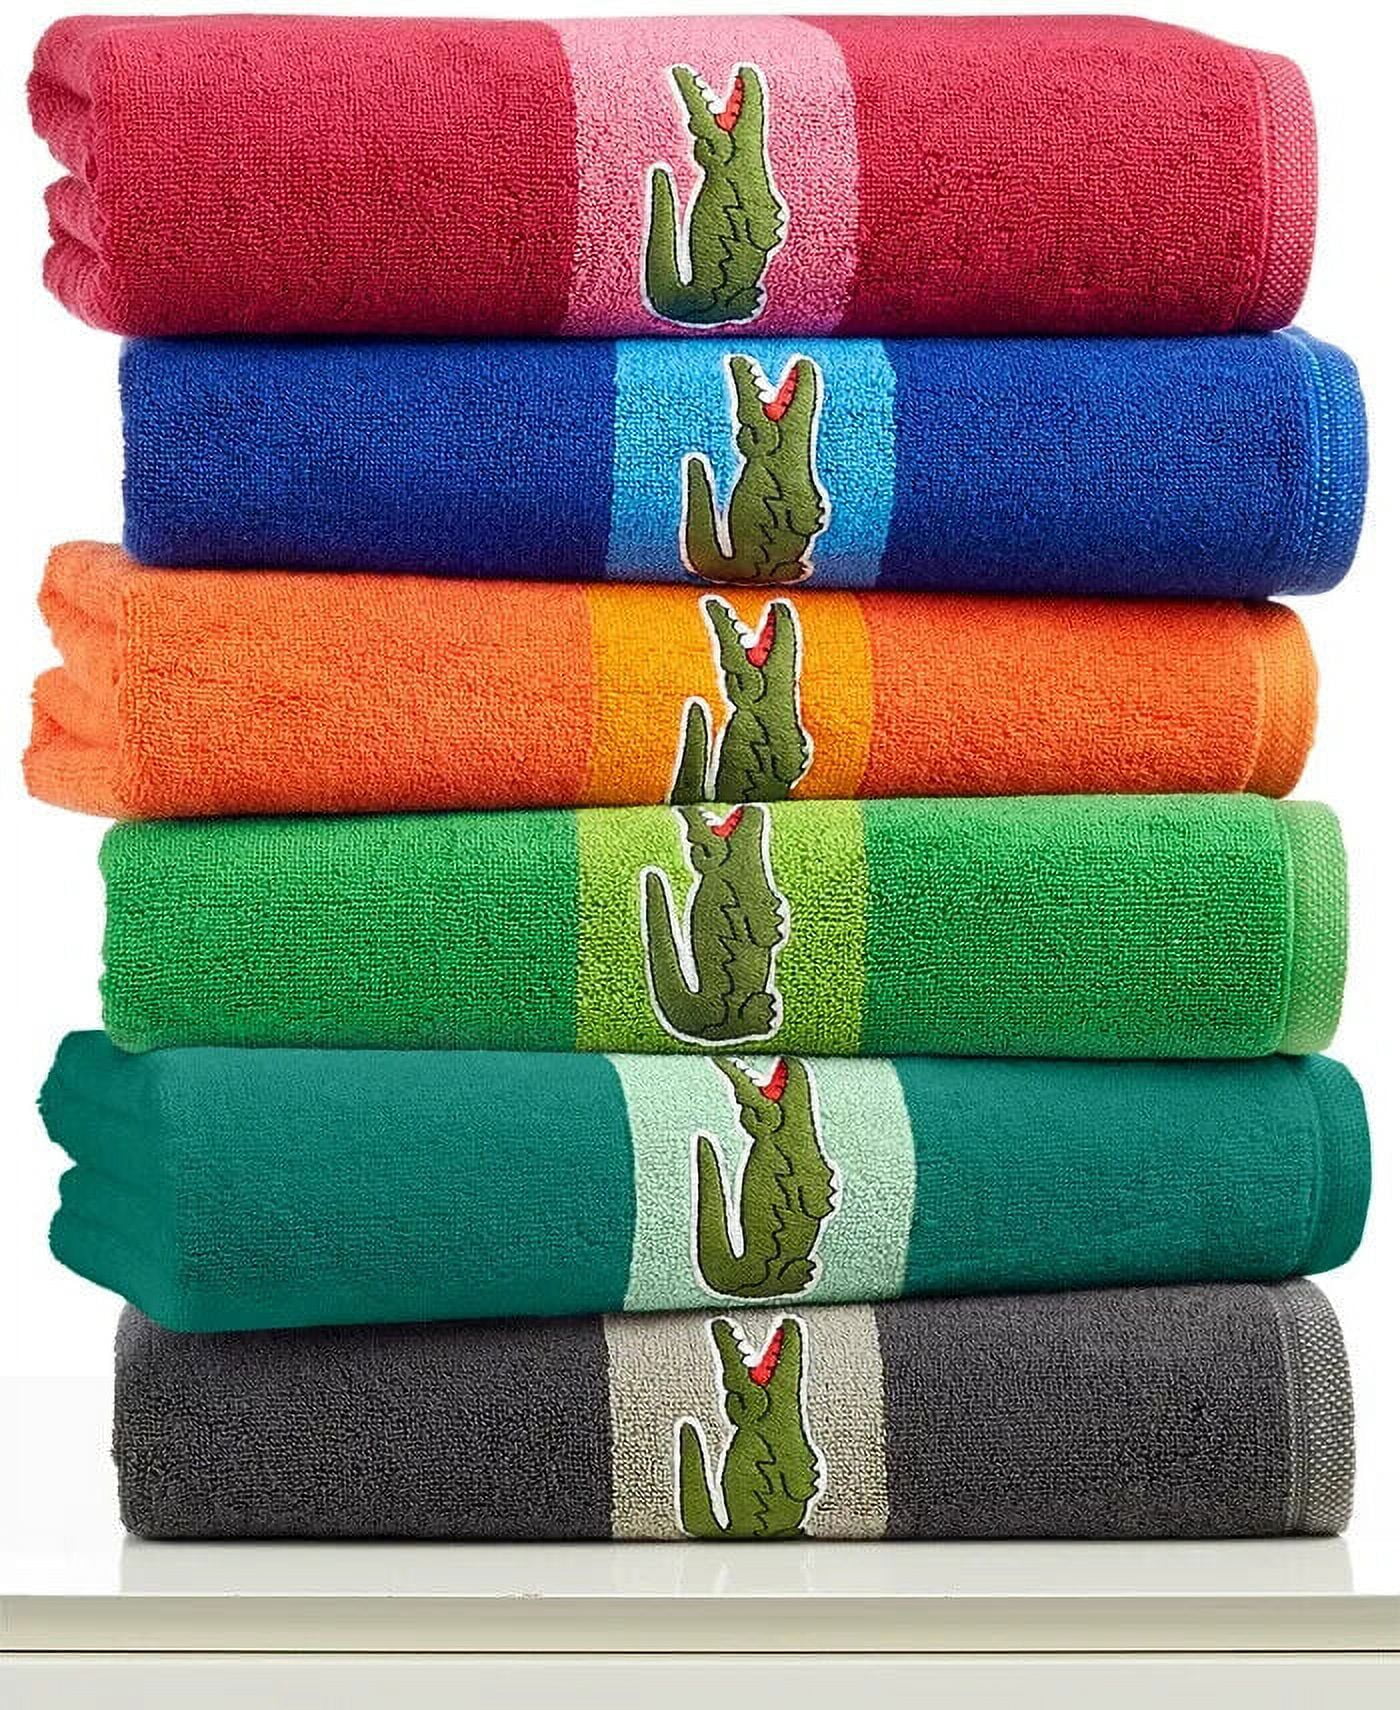 Lacoste Match 100pct Cotton Bath Towel, Green